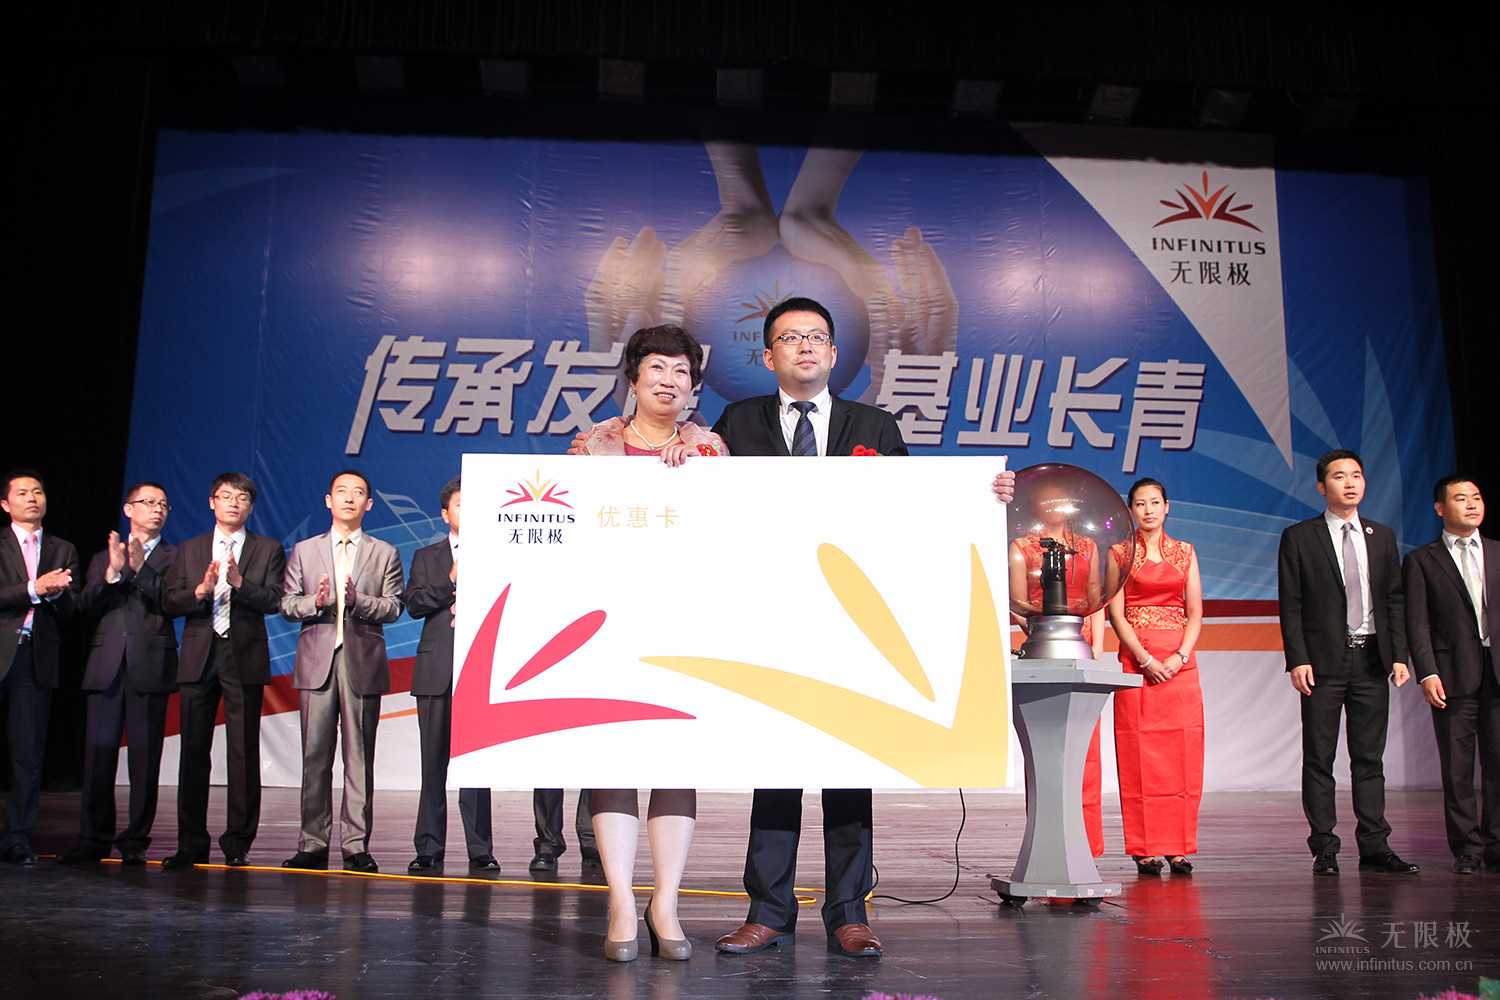 （加一张）2014年6月20日上海，在www56net首场“梦想接力”活动上，周英峰把自己奋斗了8年的www56net事业传承给了儿子杨罡。